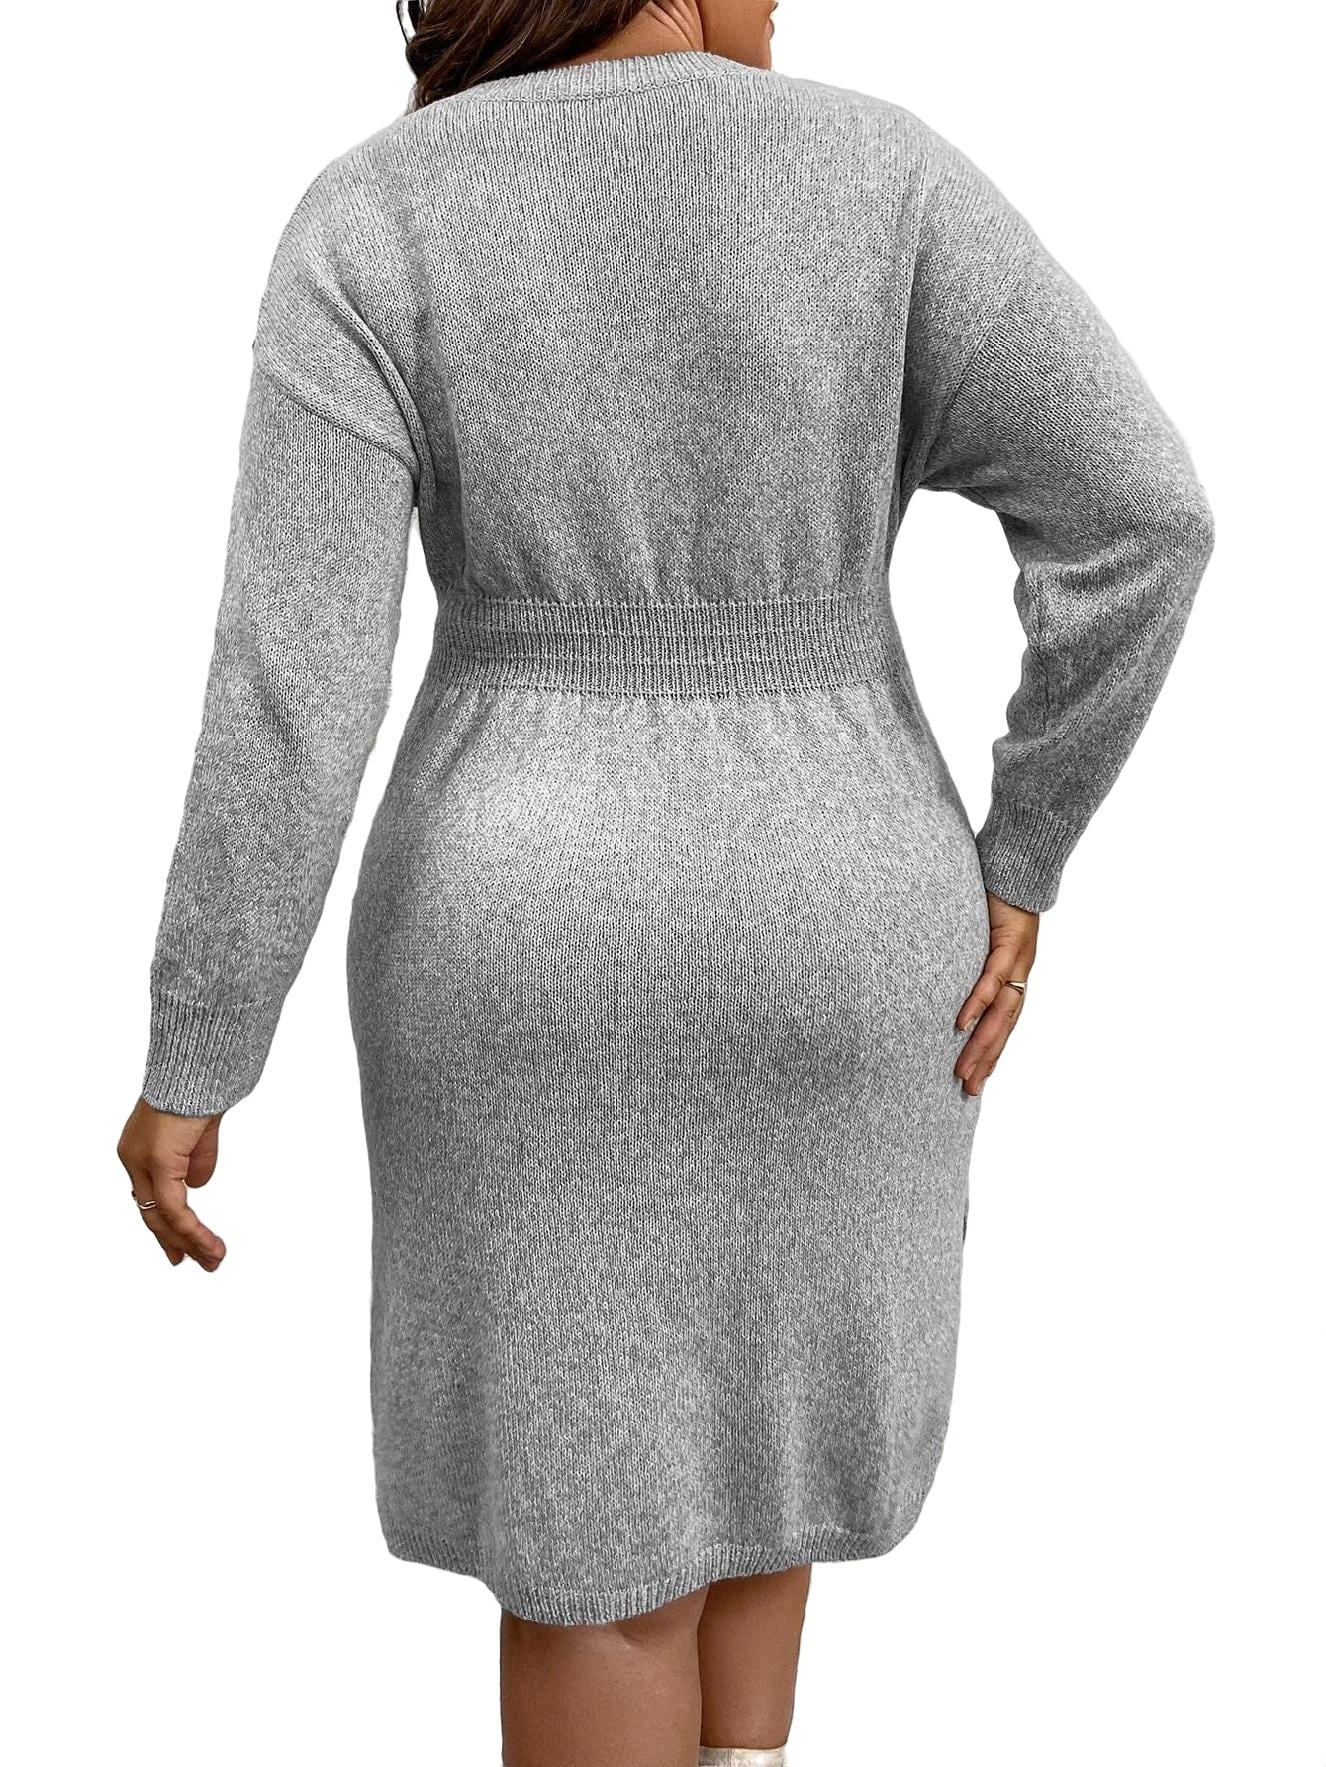 grey plus size dress